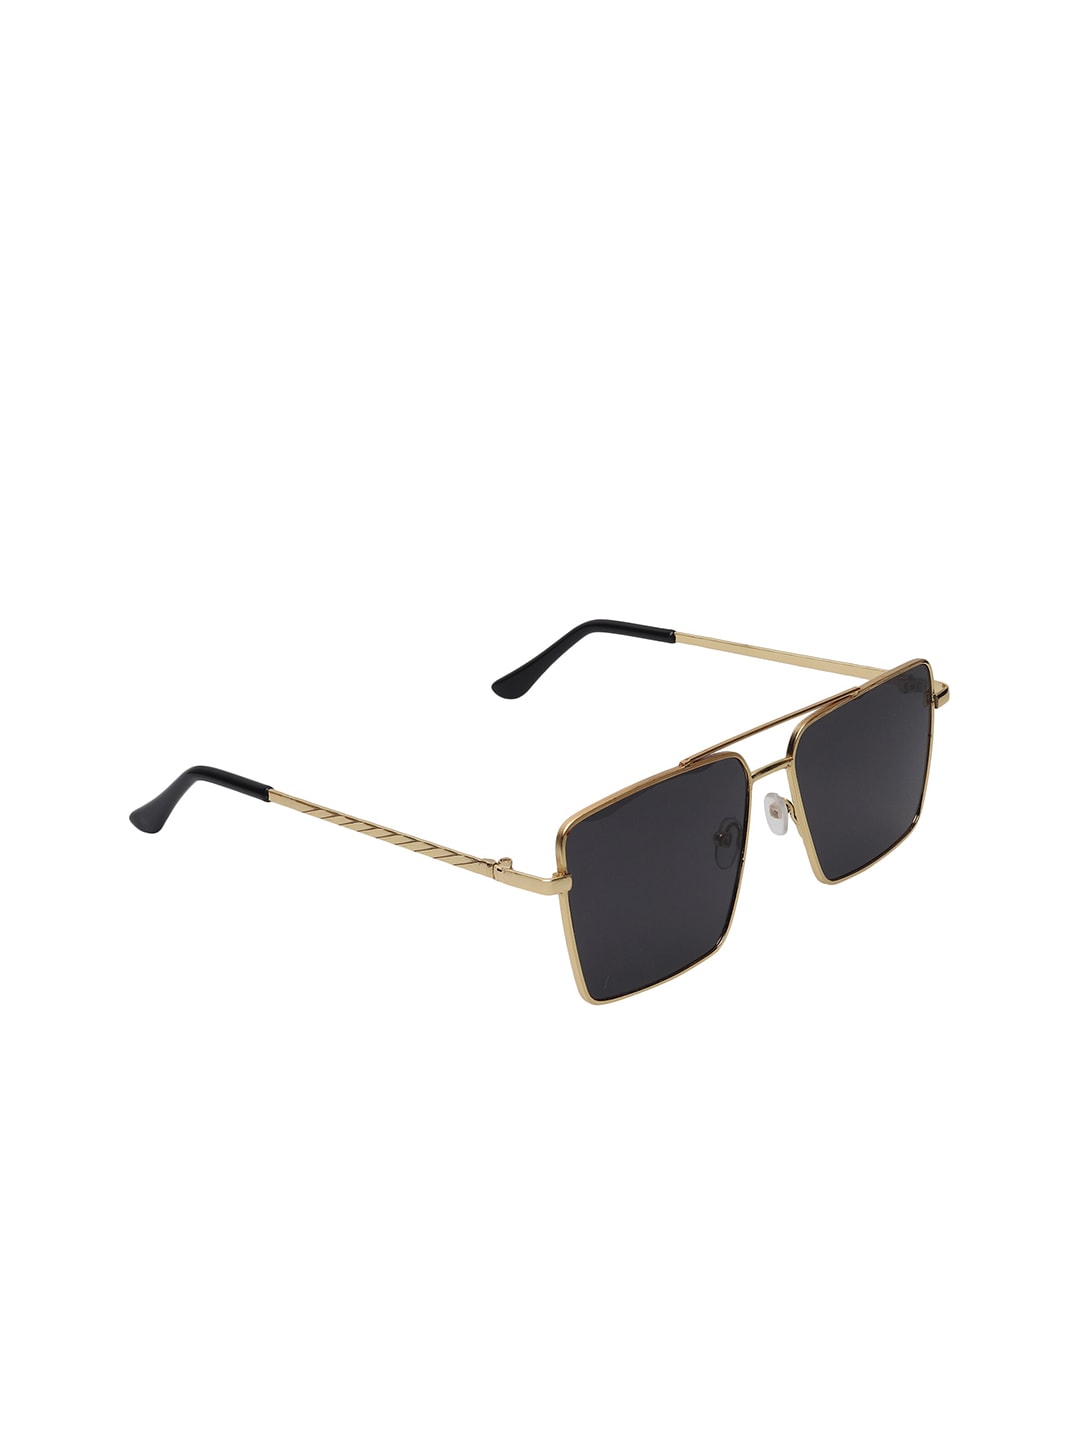 GARTH Unisex Black Lens & Gold Square Sunglasses & UV Protected Lens NEW_GLD_BLK_GRT